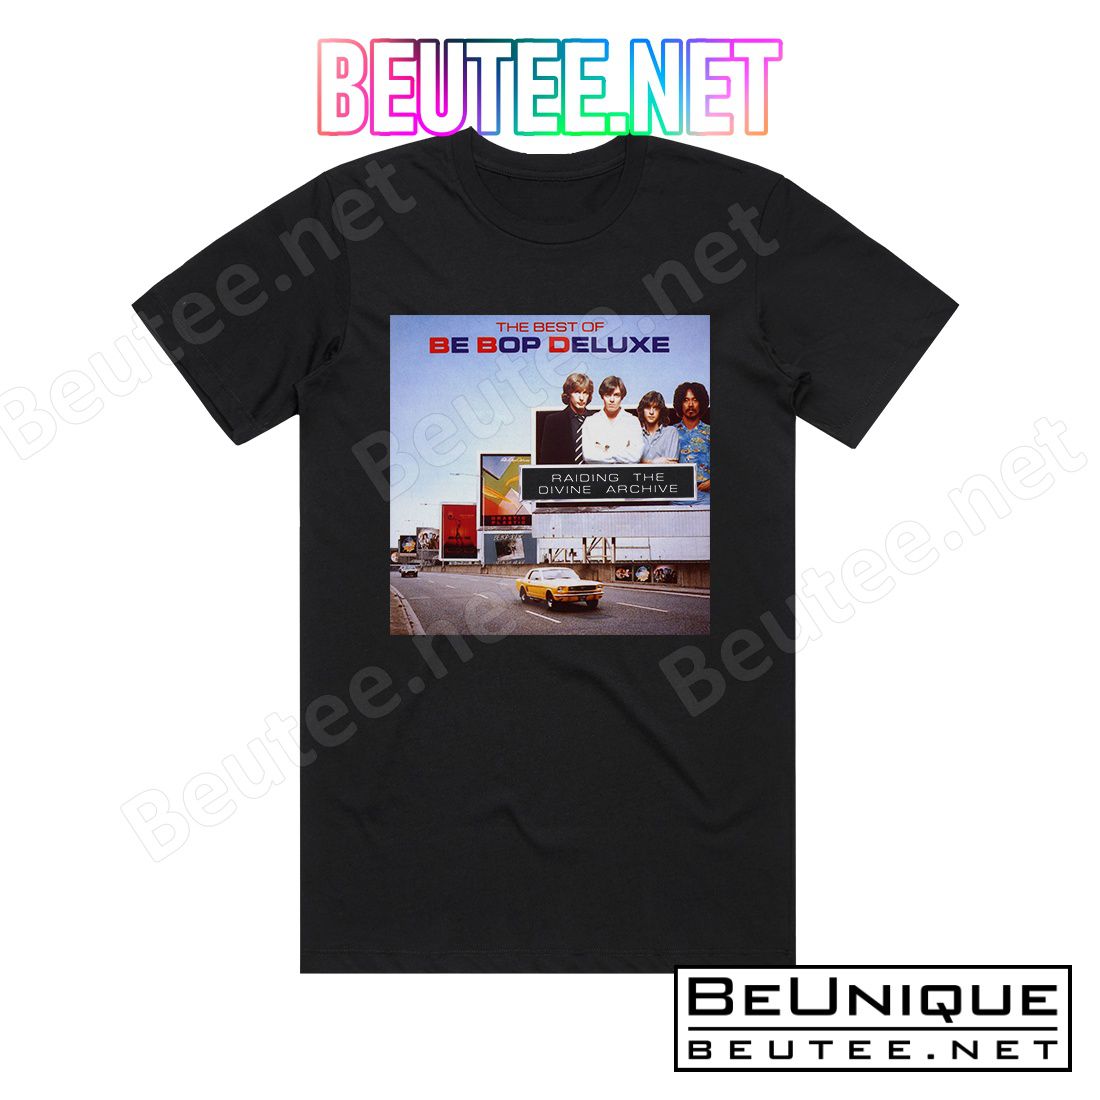 Be Bop Deluxe Raiding The Divine Archive Album Cover T-Shirt